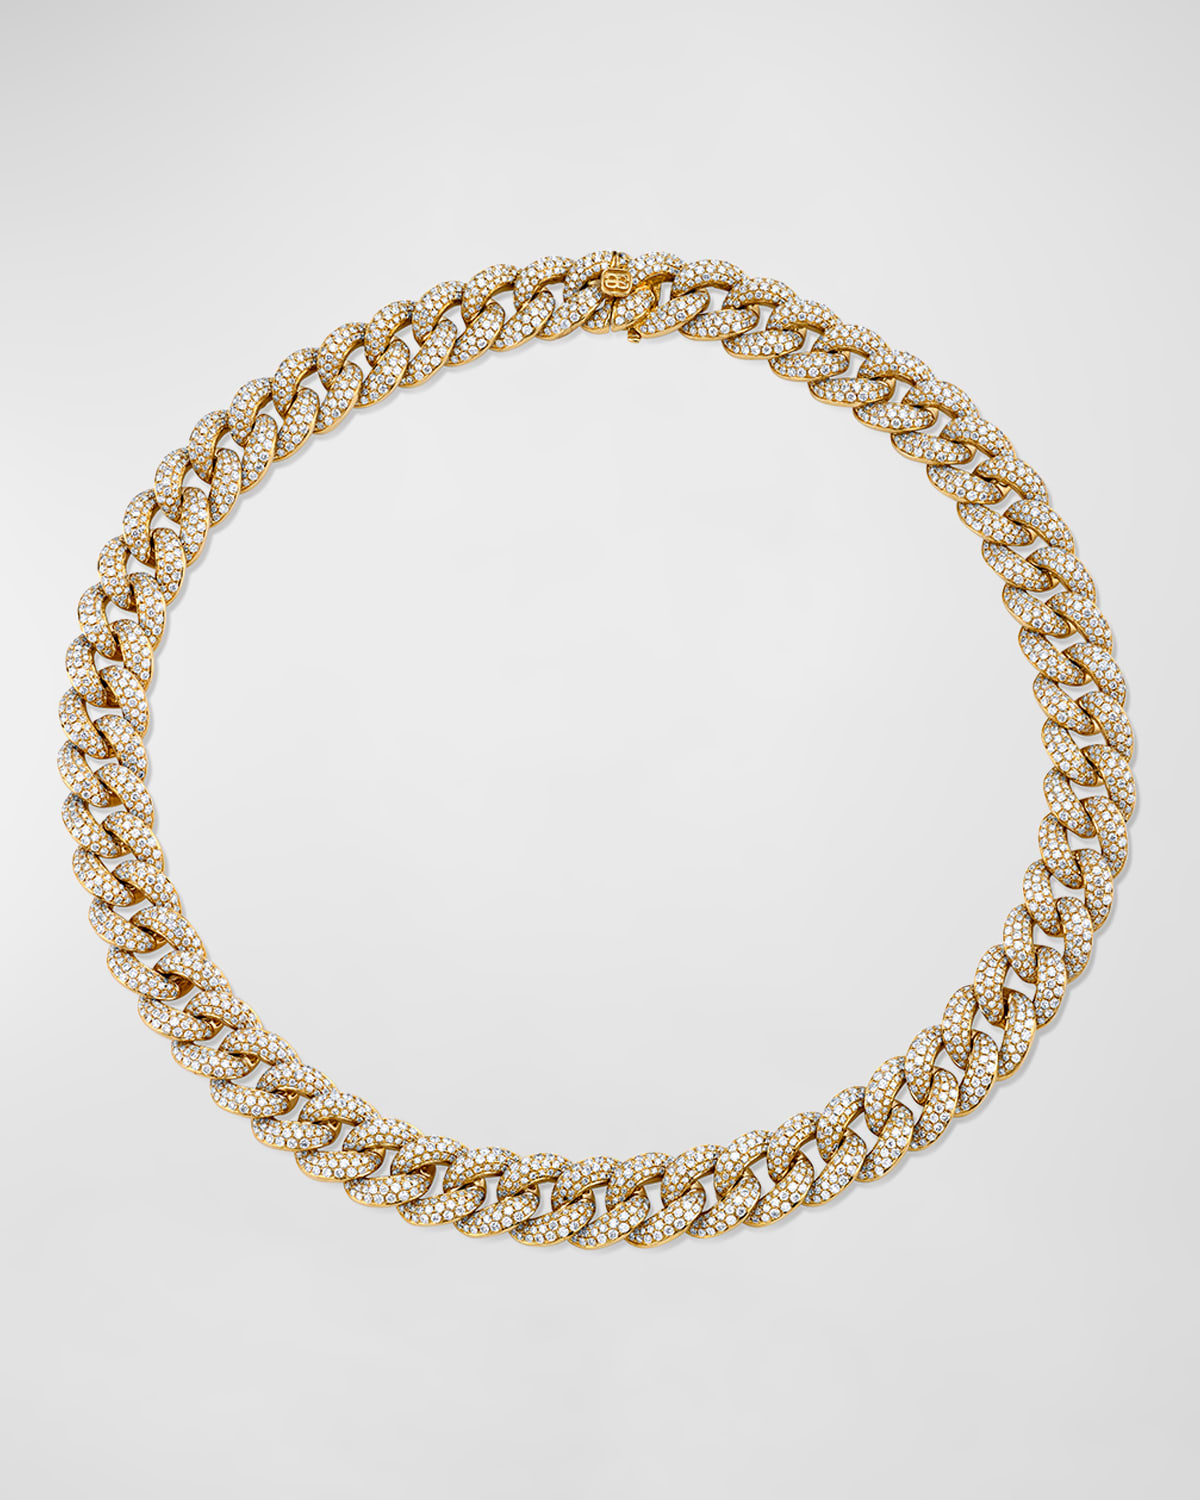 Sydney Evan 14k Gold Micropave Diamond-link Necklace, 16"l